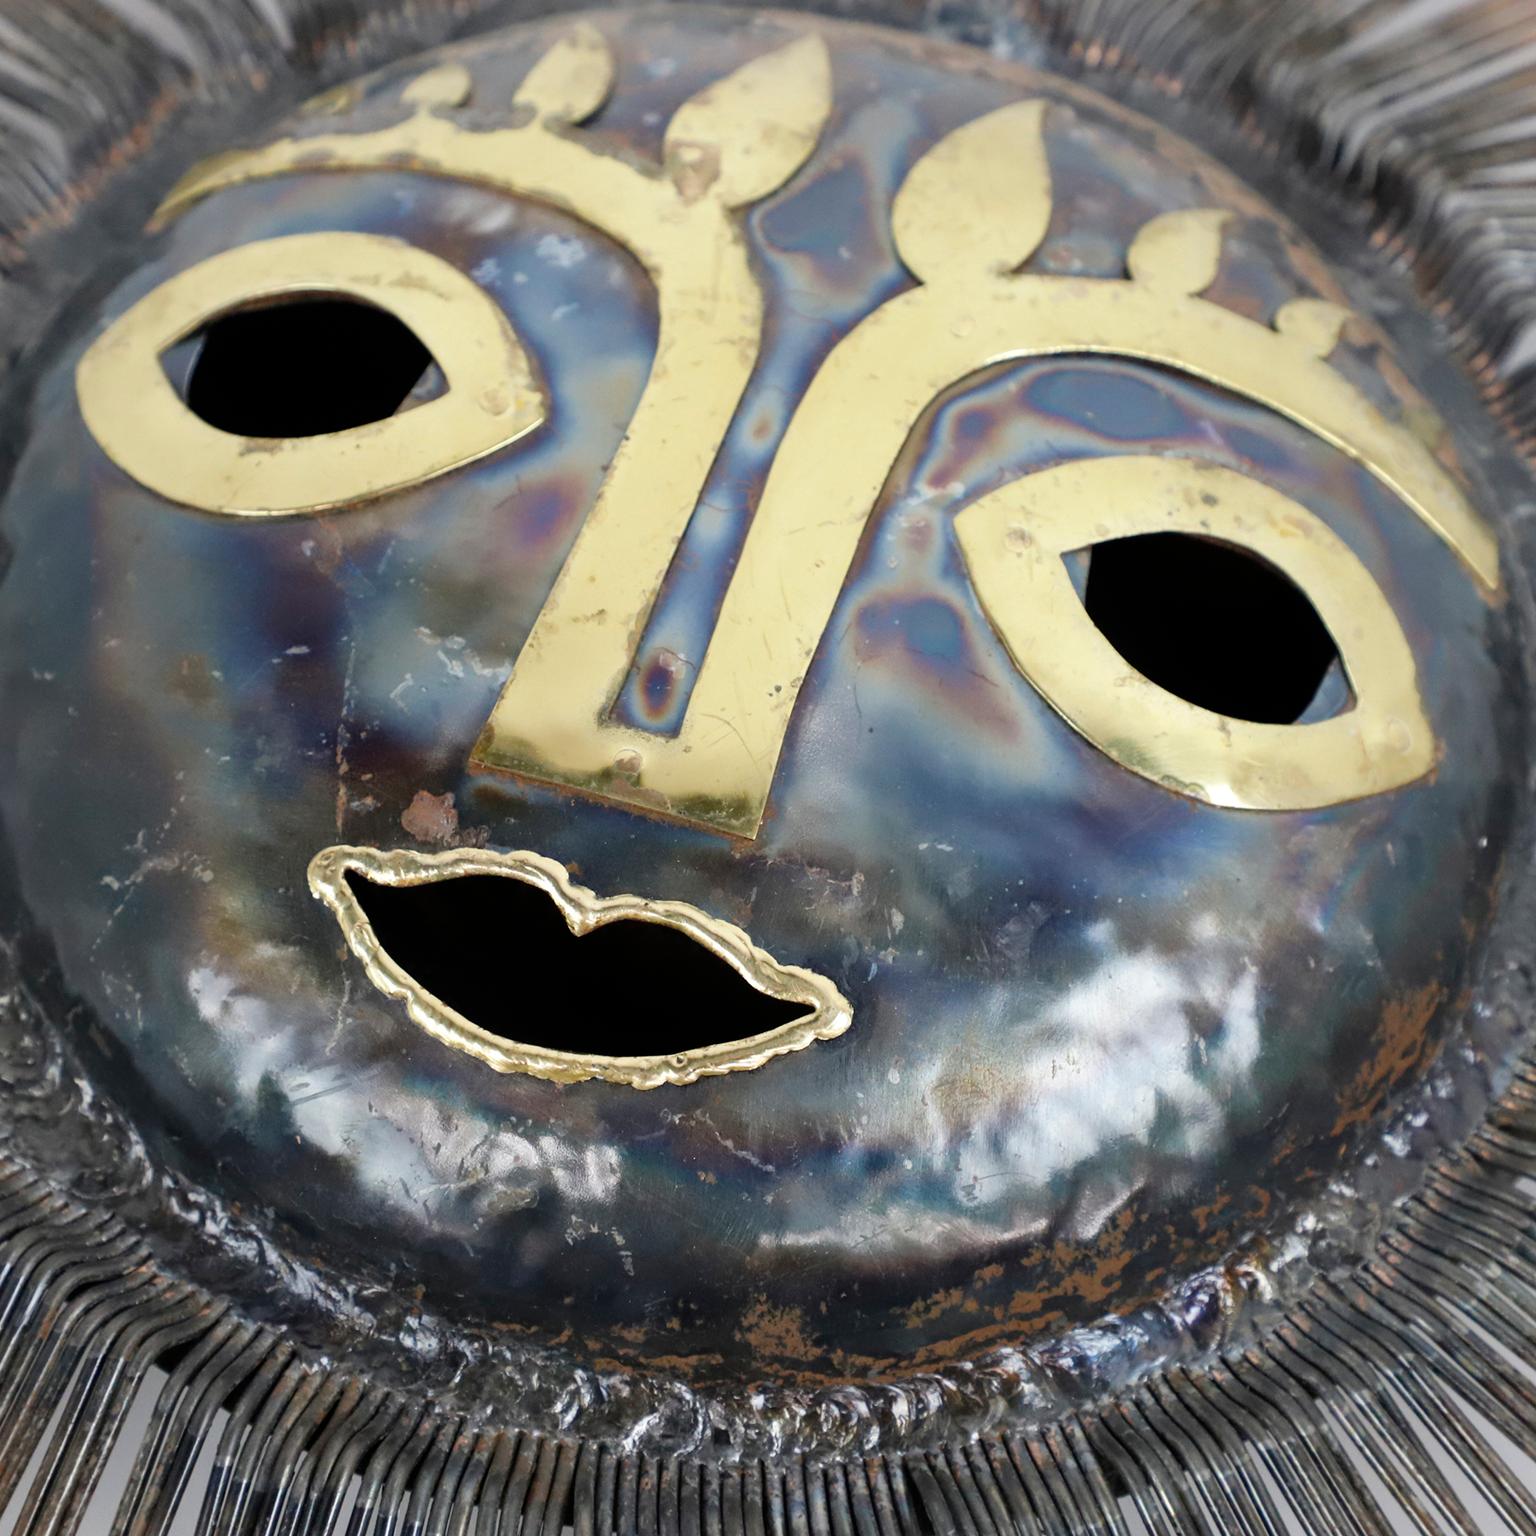 Nous proposons cette sculpture surréaliste de soleil brutaliste en laiton et bronze par les moines bénédictins Emaus, vers 1970. Emaus : nom de l'atelier des moines bénédictins de Cuernavaca dans l'État de Morelos au Mexique.